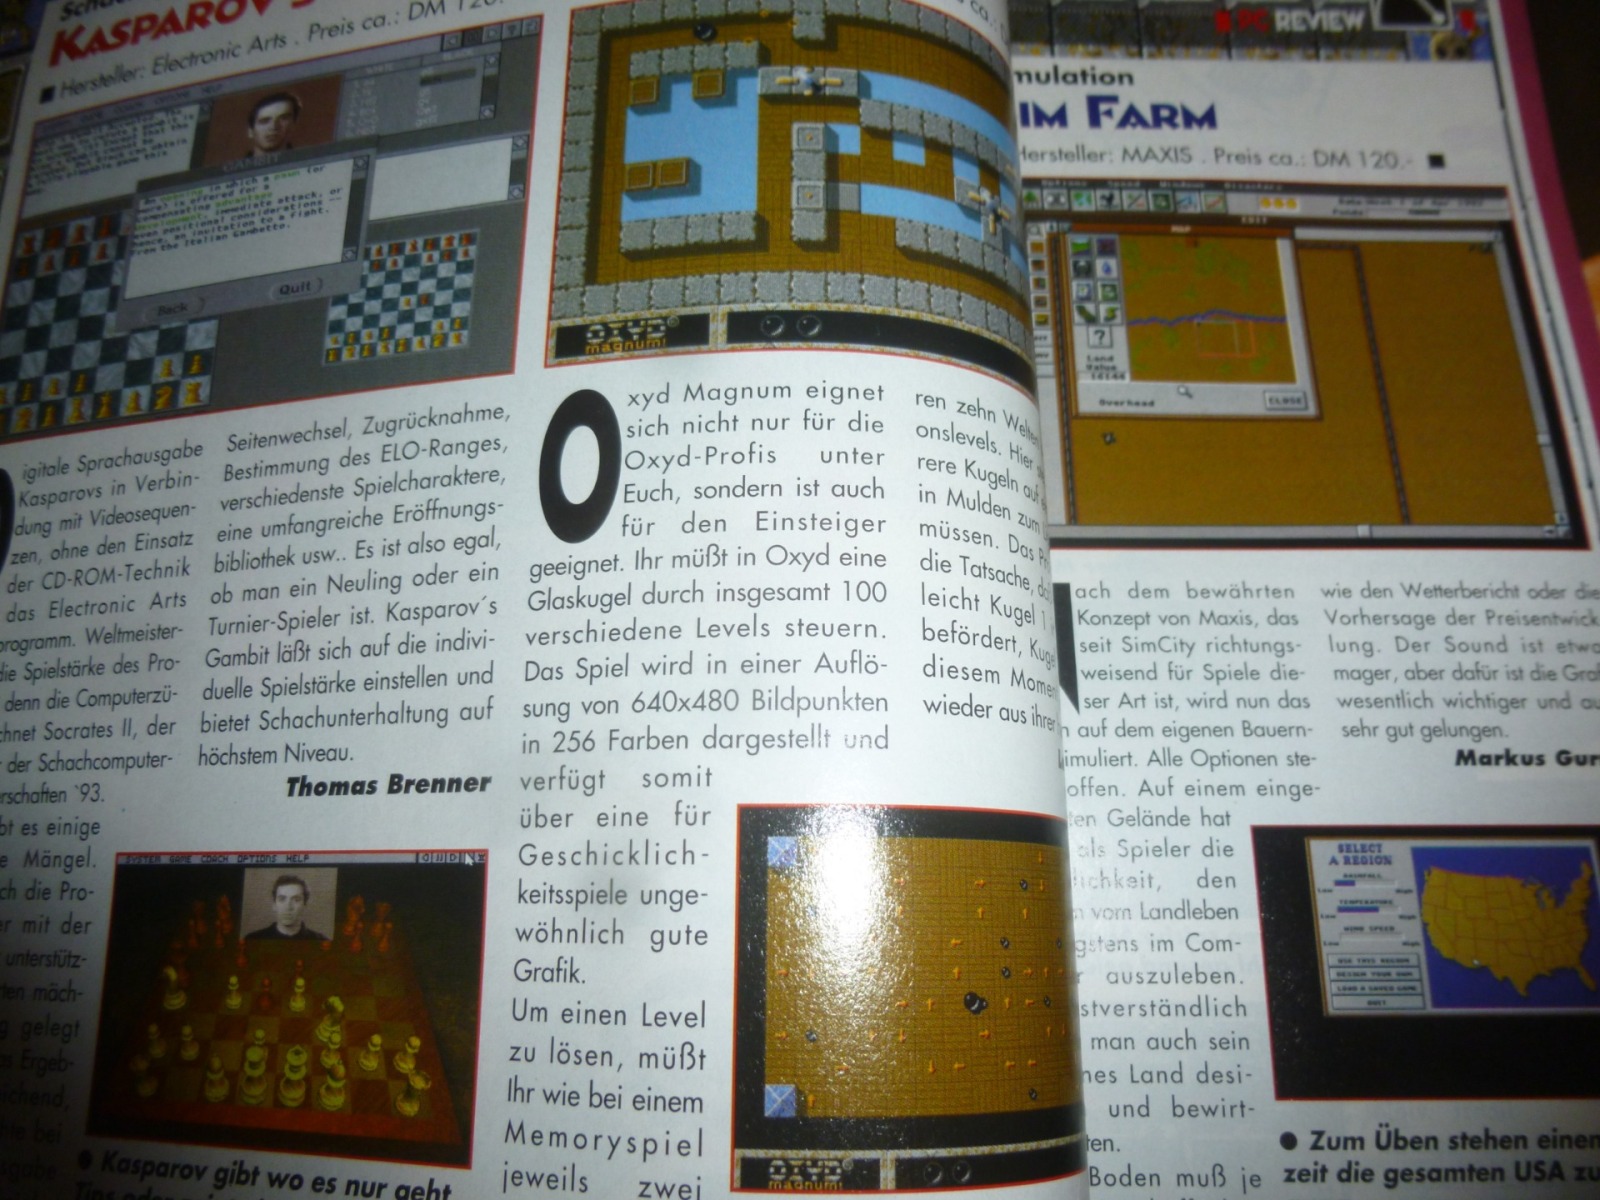 Play Time - Das Computer- und Videospiele-Magazin - Ausgabe 12/93 1993 13